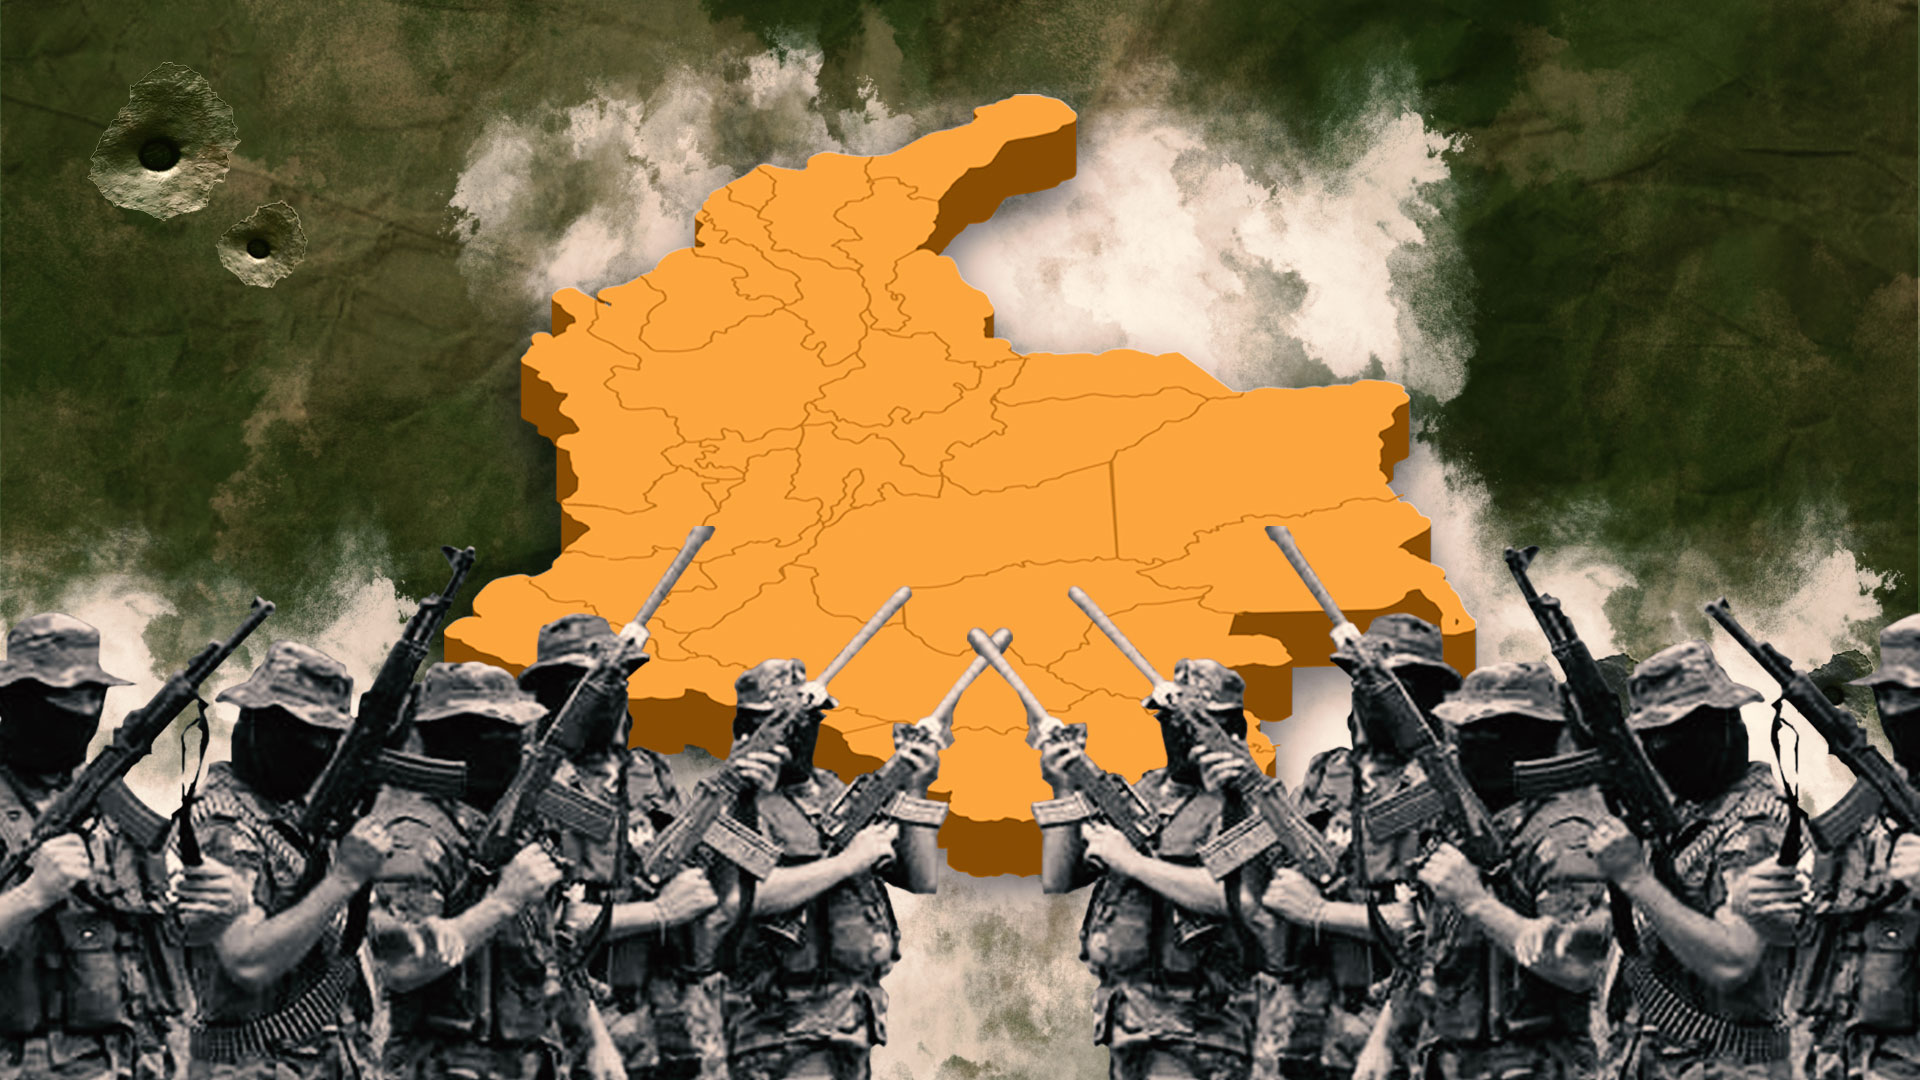 El comandante de las Fuerzas Militares, general Hernán Giraldo, ratificó también la orden de continuar con la ofensiva contra integrantes de las también denominadas Autodefensas Gaitanistas de Colombia.
Infobae (Jesús Avilés)